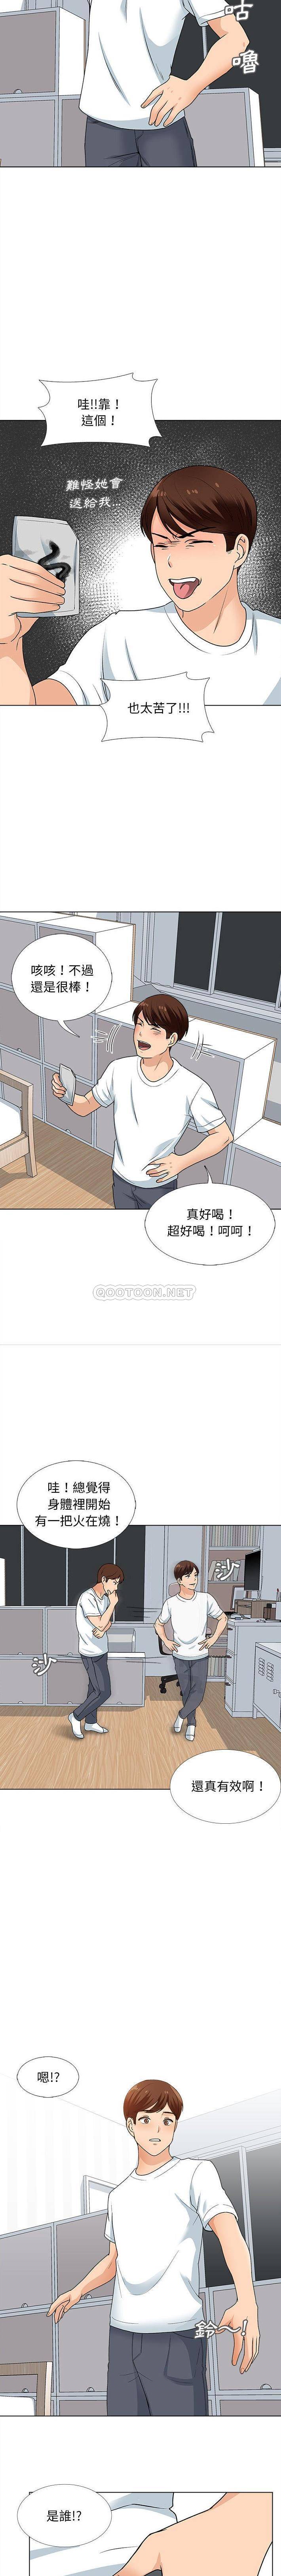 韩国污漫画 幸福公寓 第13话 15